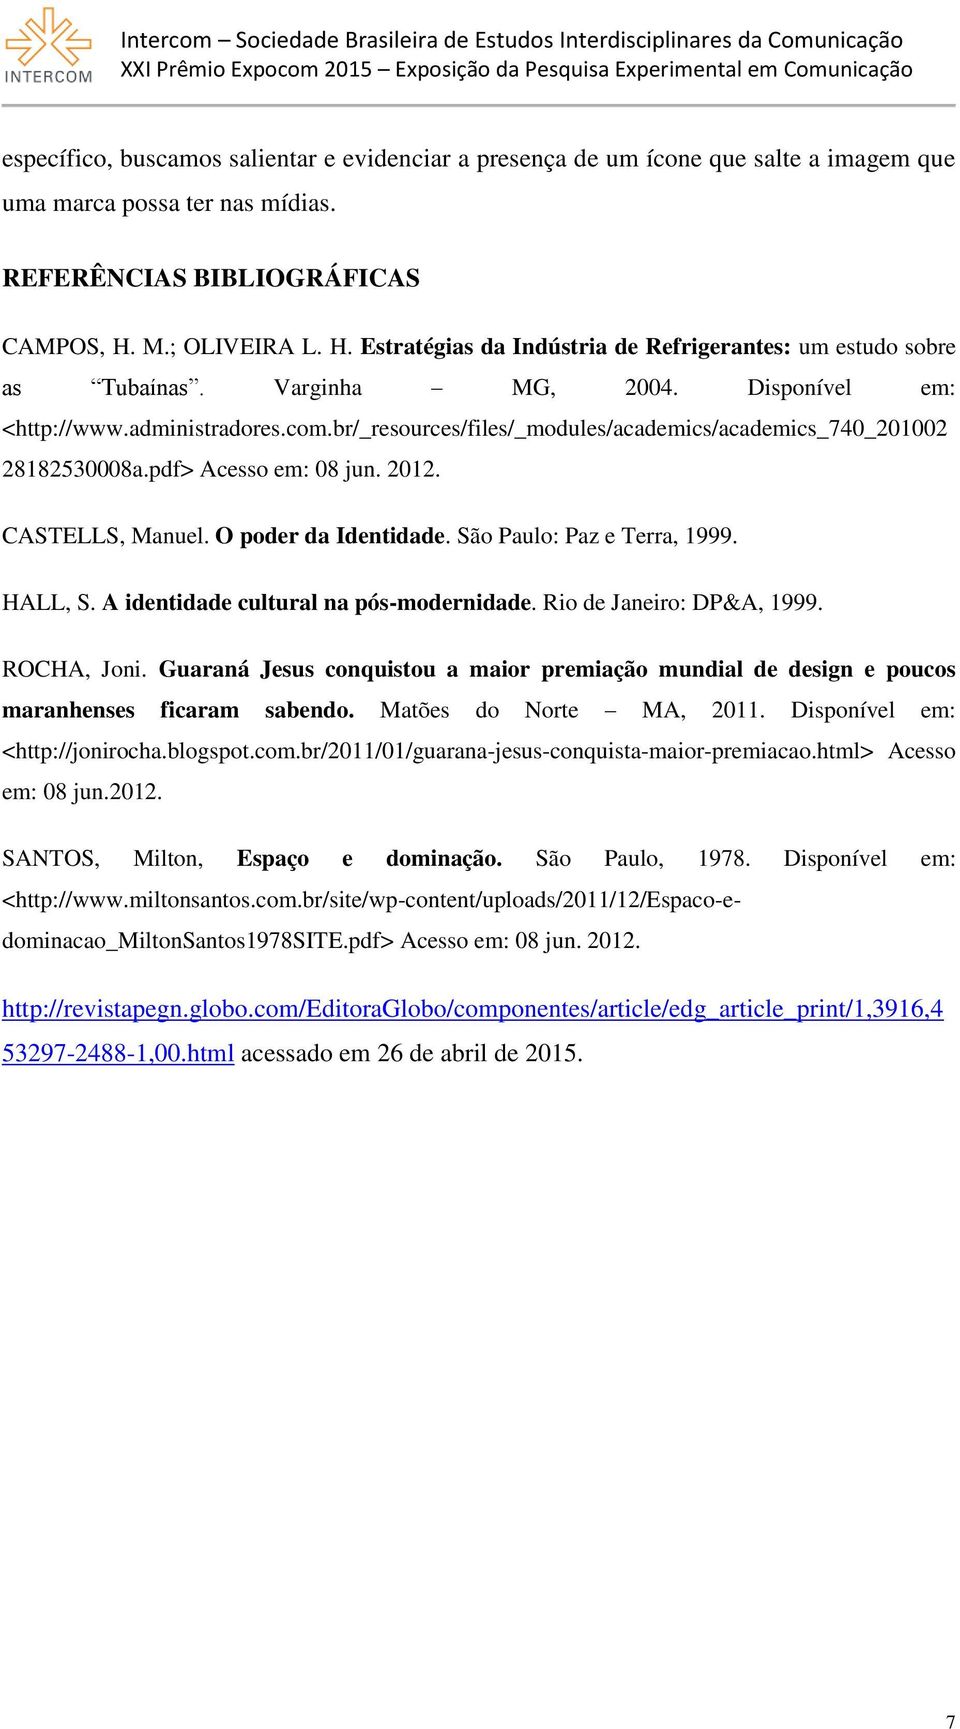 br/_resources/files/_modules/academics/academics_740_201002 28182530008a.pdf> Acesso em: 08 jun. 2012. CASTELLS, Manuel. O poder da Identidade. São Paulo: Paz e Terra, 1999. HALL, S.